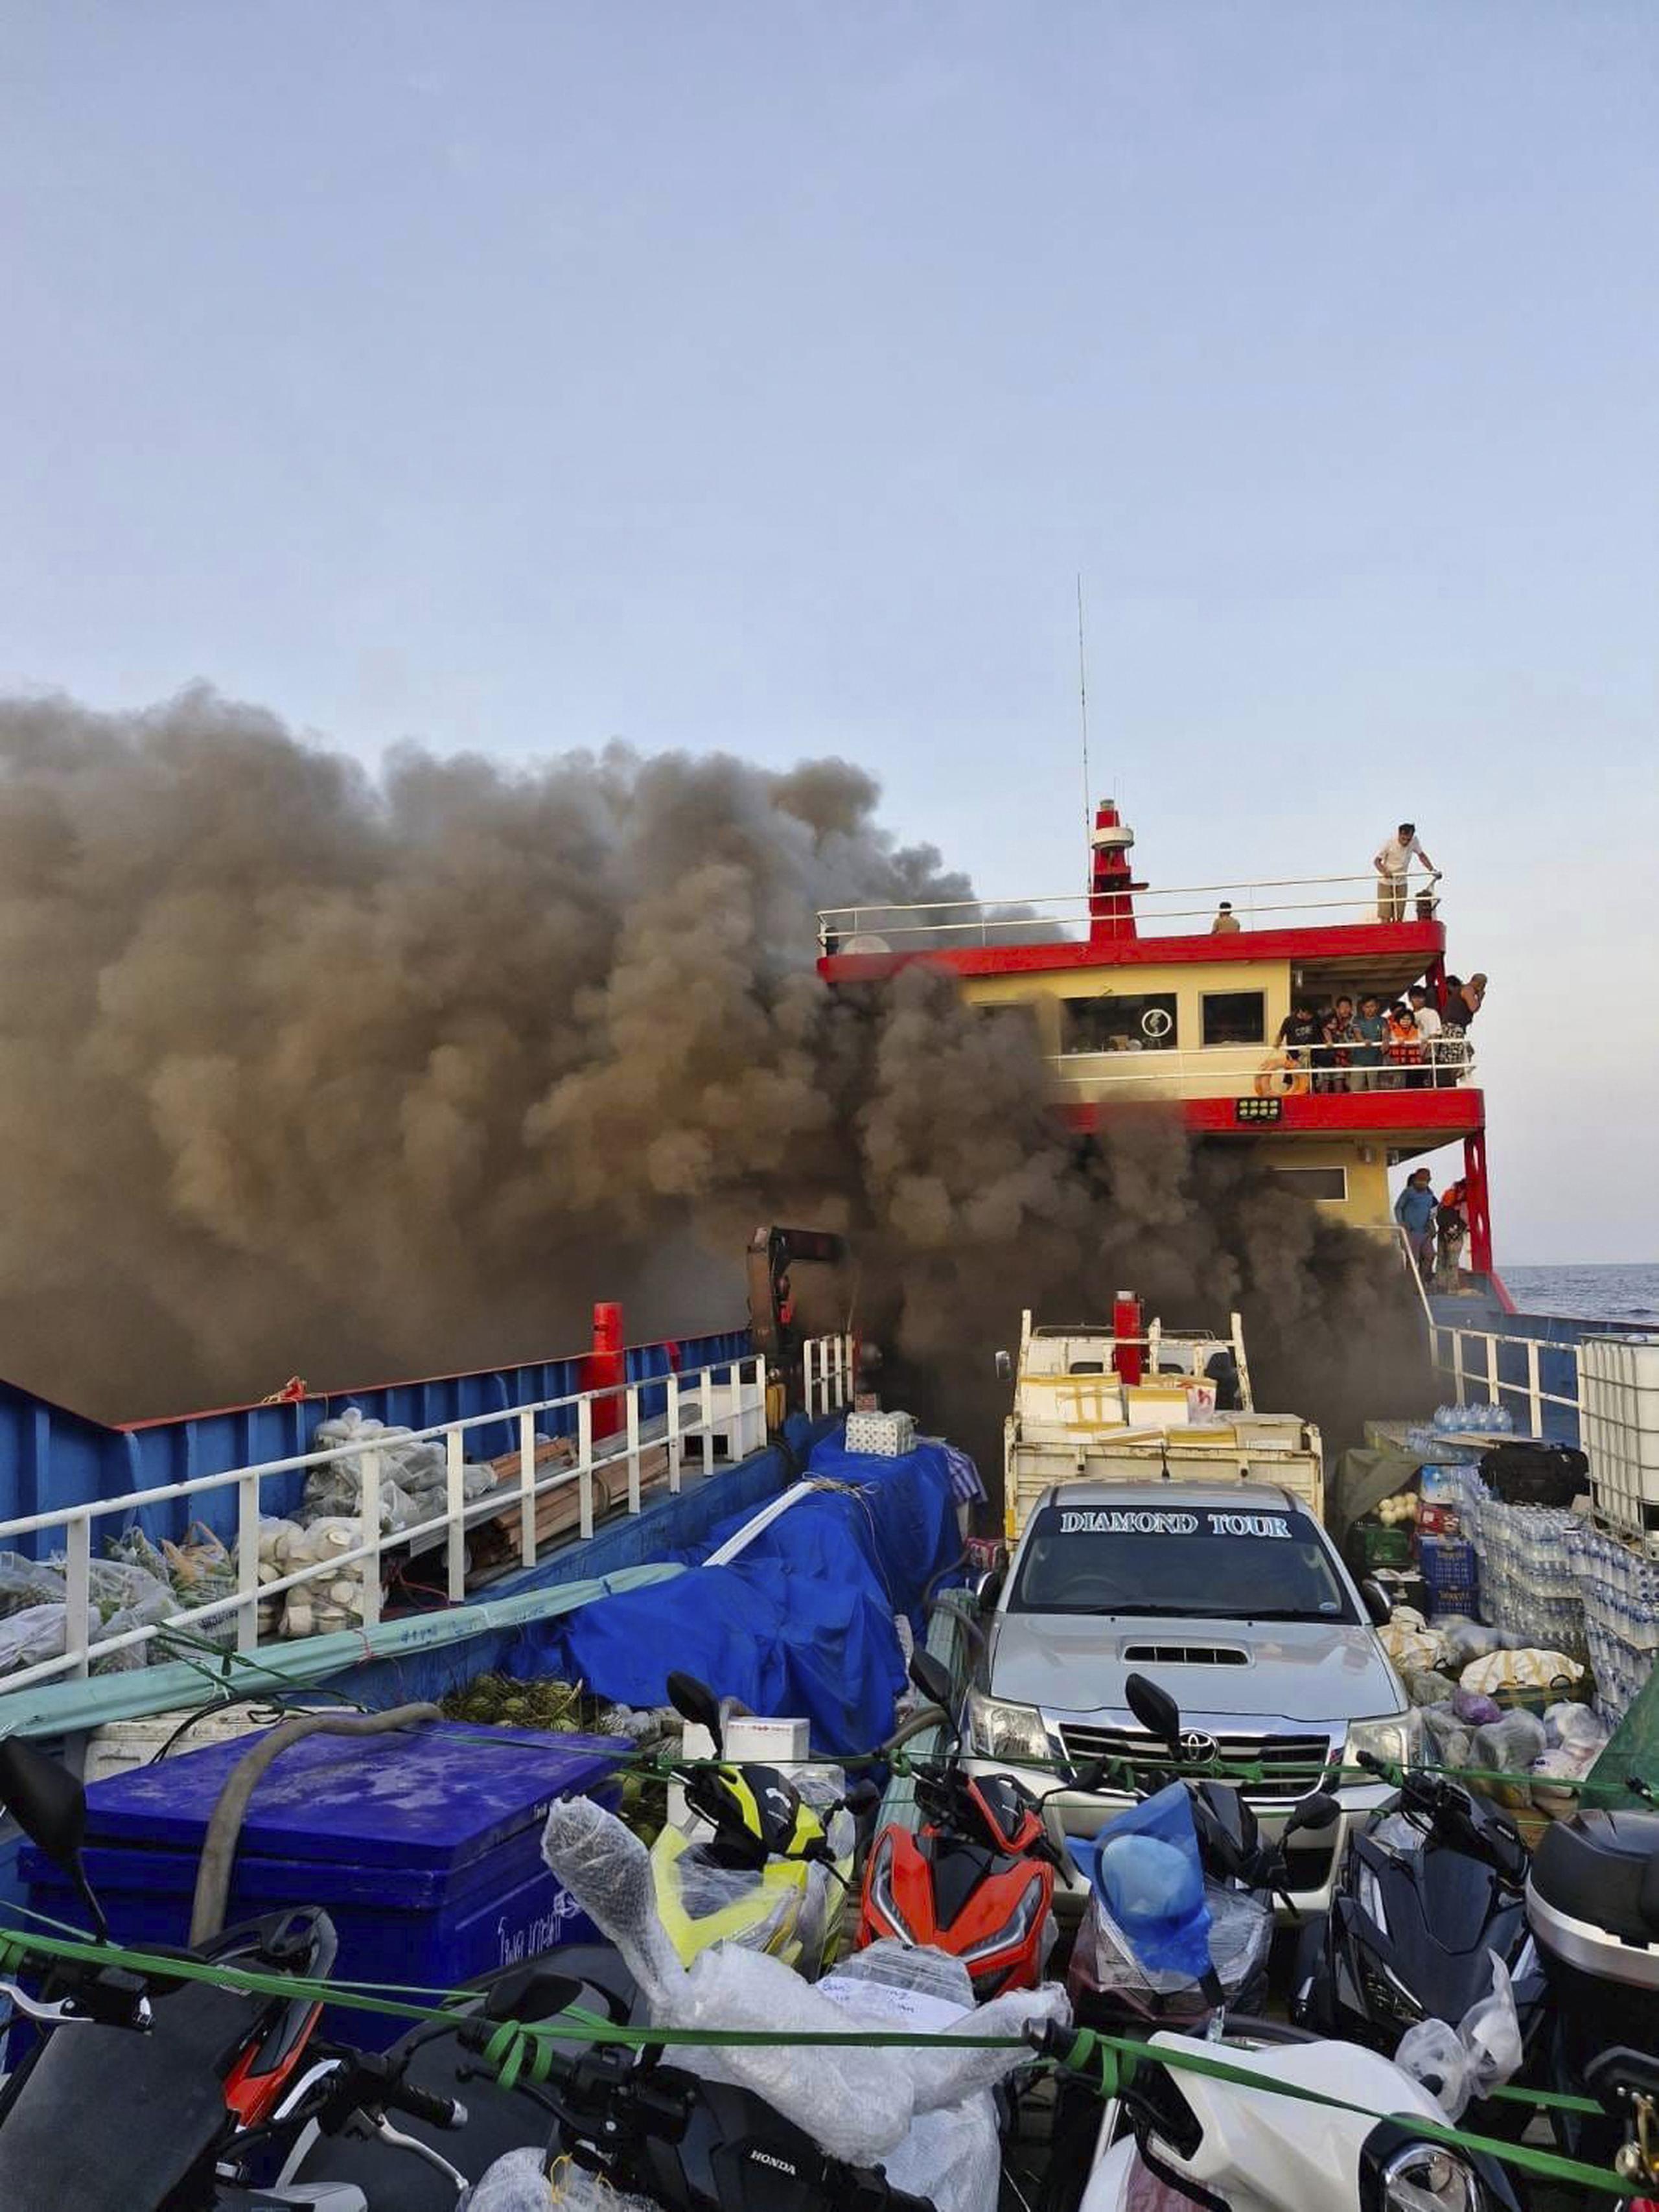 Los videos mostraban a gente saliendo a toda prisa de la cabina del transbordador colocándose los chalecos salvavidas, mientras un denso humo negro se extendía por la embarcación, que más tarde quedó envuelta en llamas.